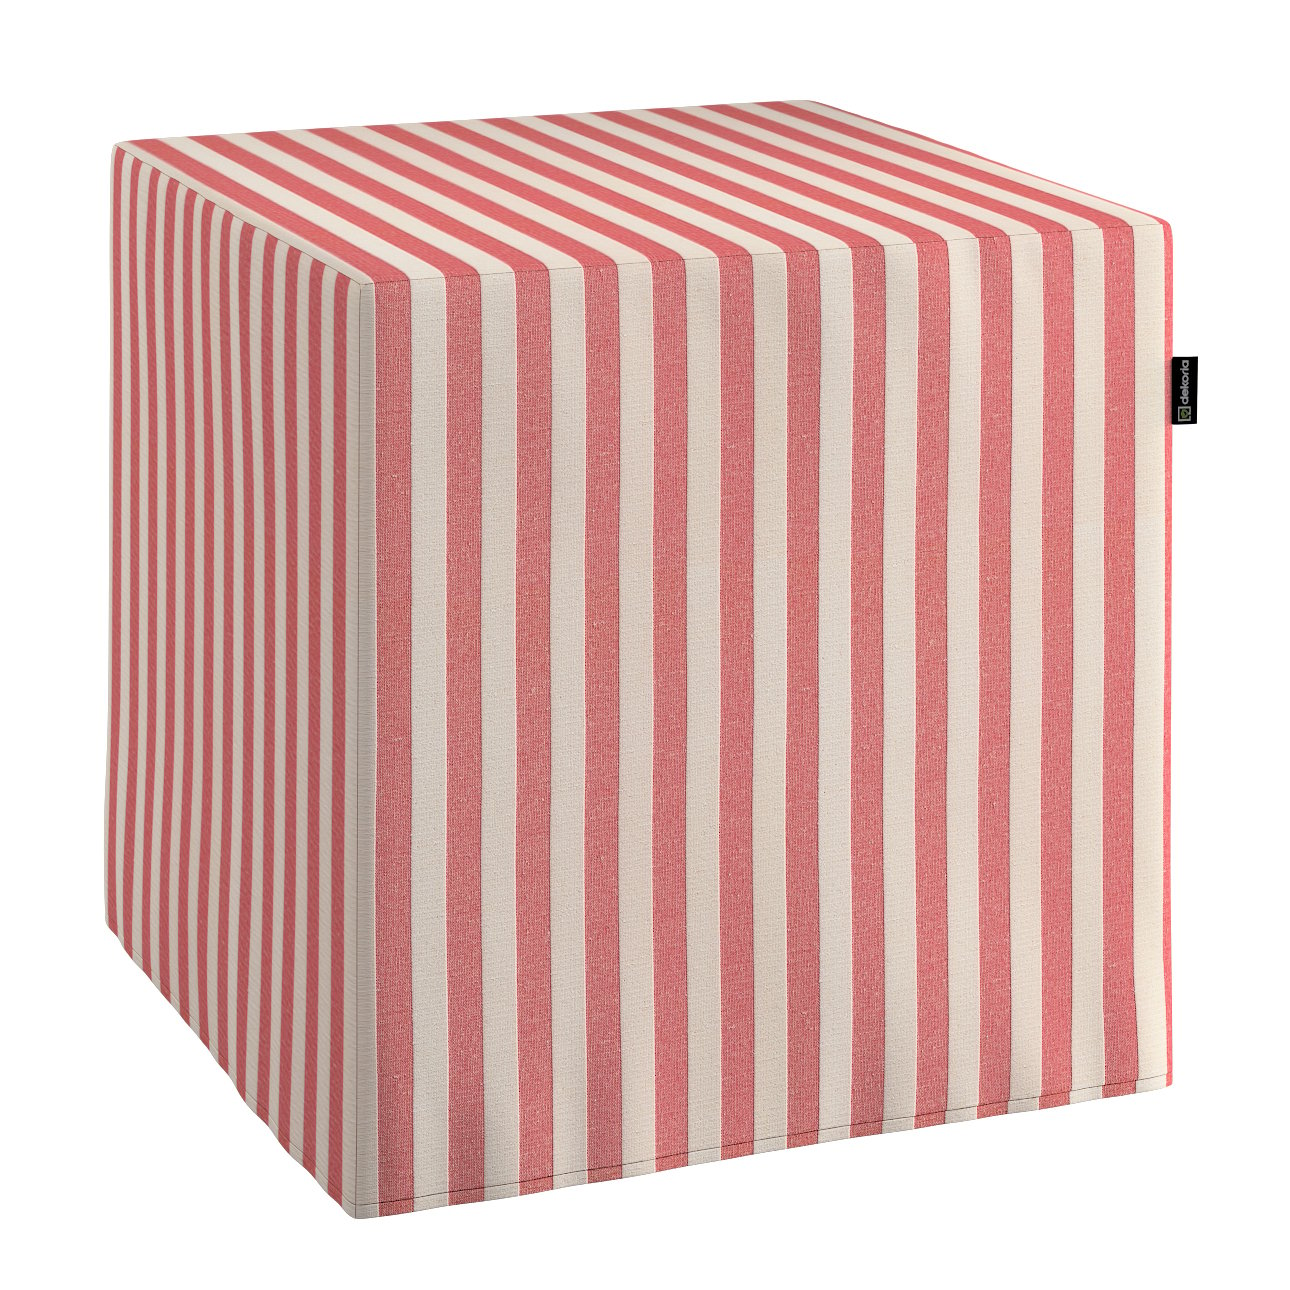 E-shop Dekoria Taburetka tvrdá, kocka, červeno-biele prúžky, 40 x 40 x 40 cm, Quadro, 136-17